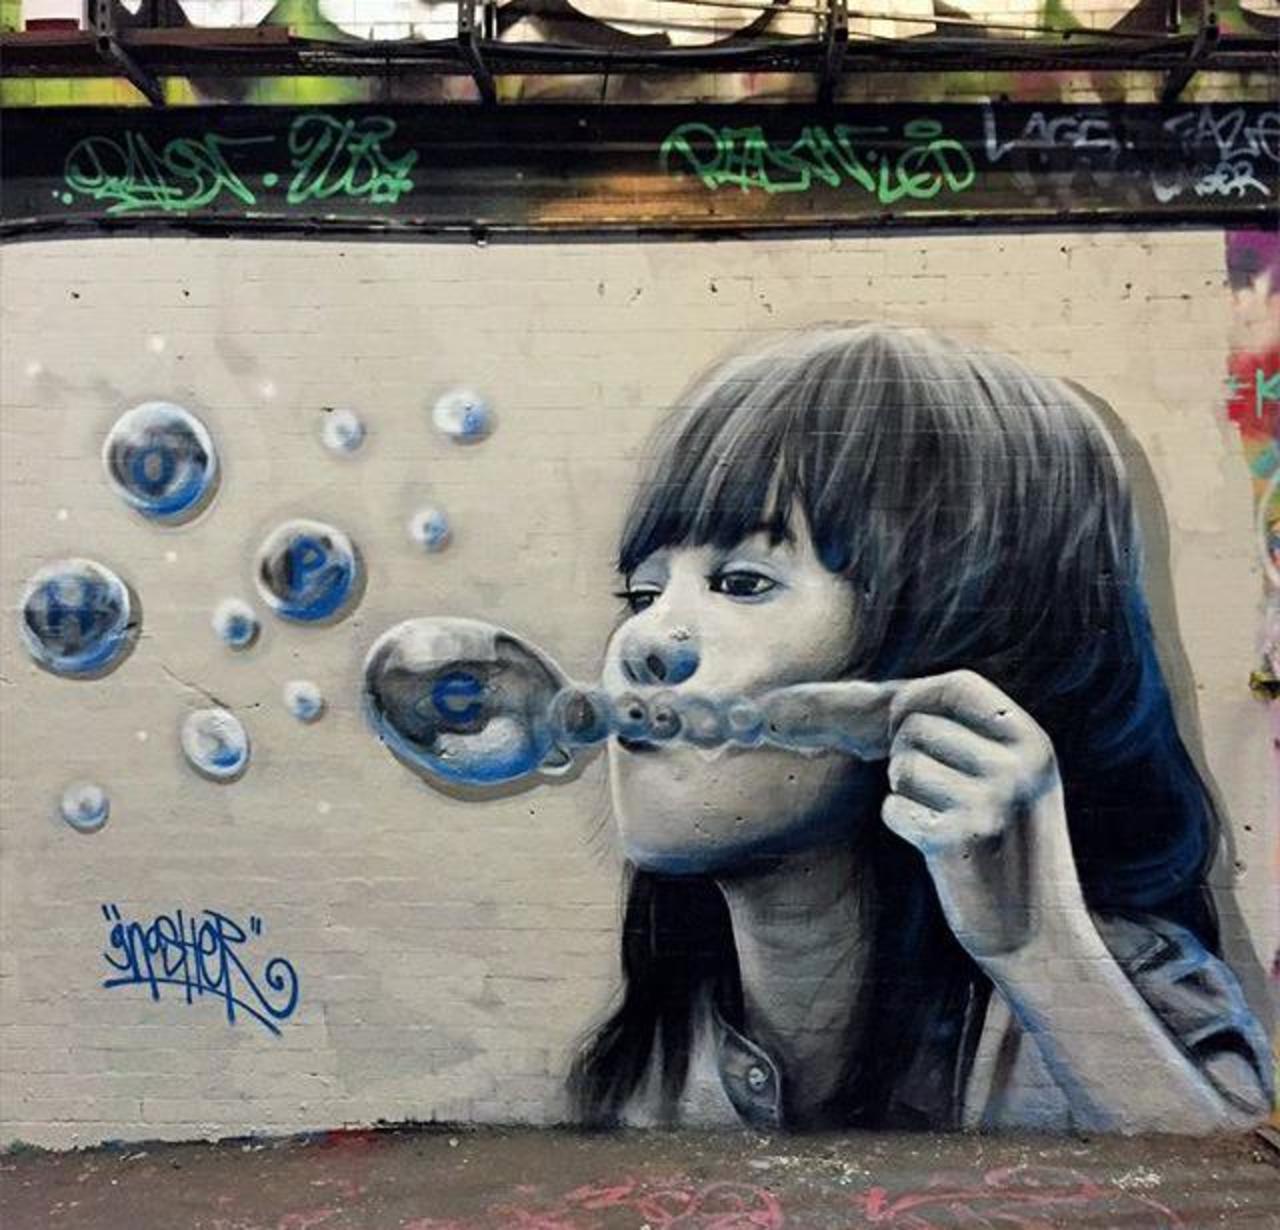 RT @DavDiProssimo: Street Art by Gnasher in London 

#art #arte #graffiti #streetart http://t.co/dgwGtdRyH2